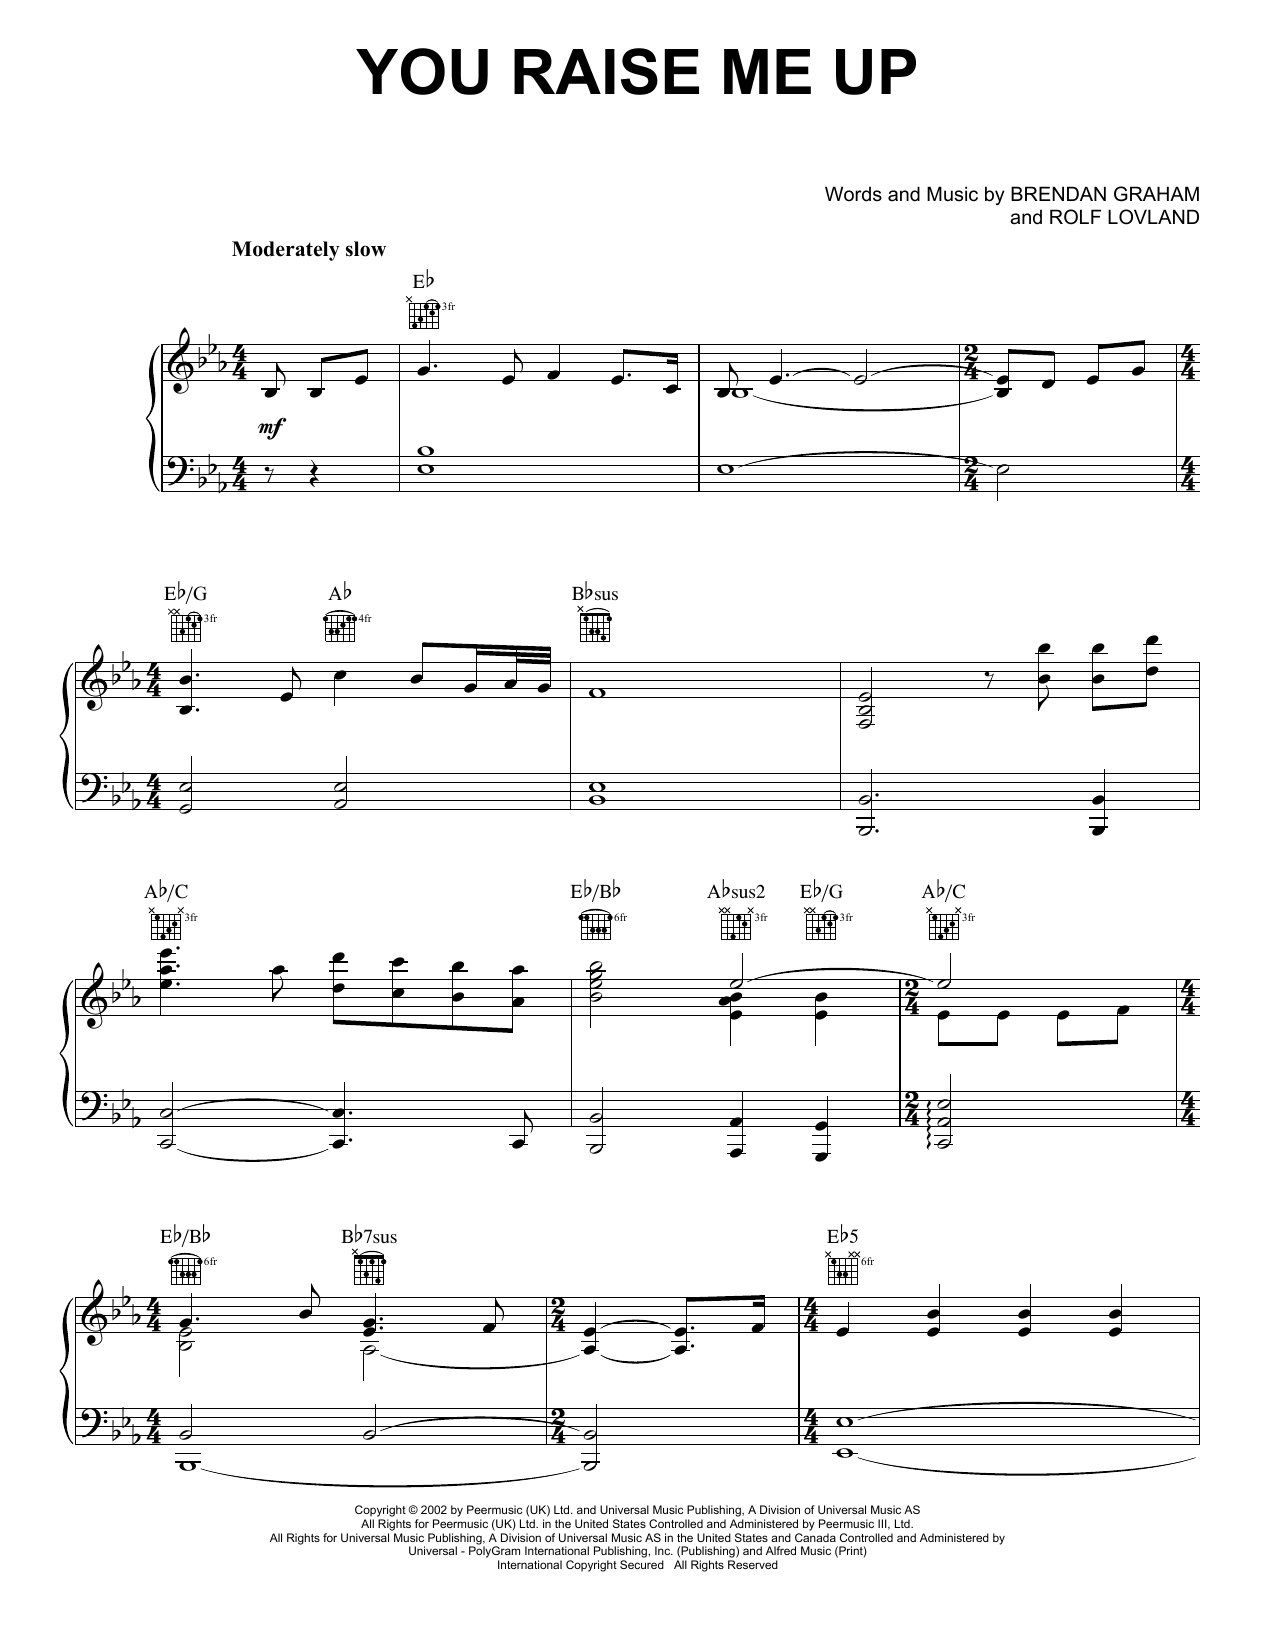 Josh Groban You Raise Me Up Sheet Music Notes & Chords for Lyrics & Chords - Download or Print PDF